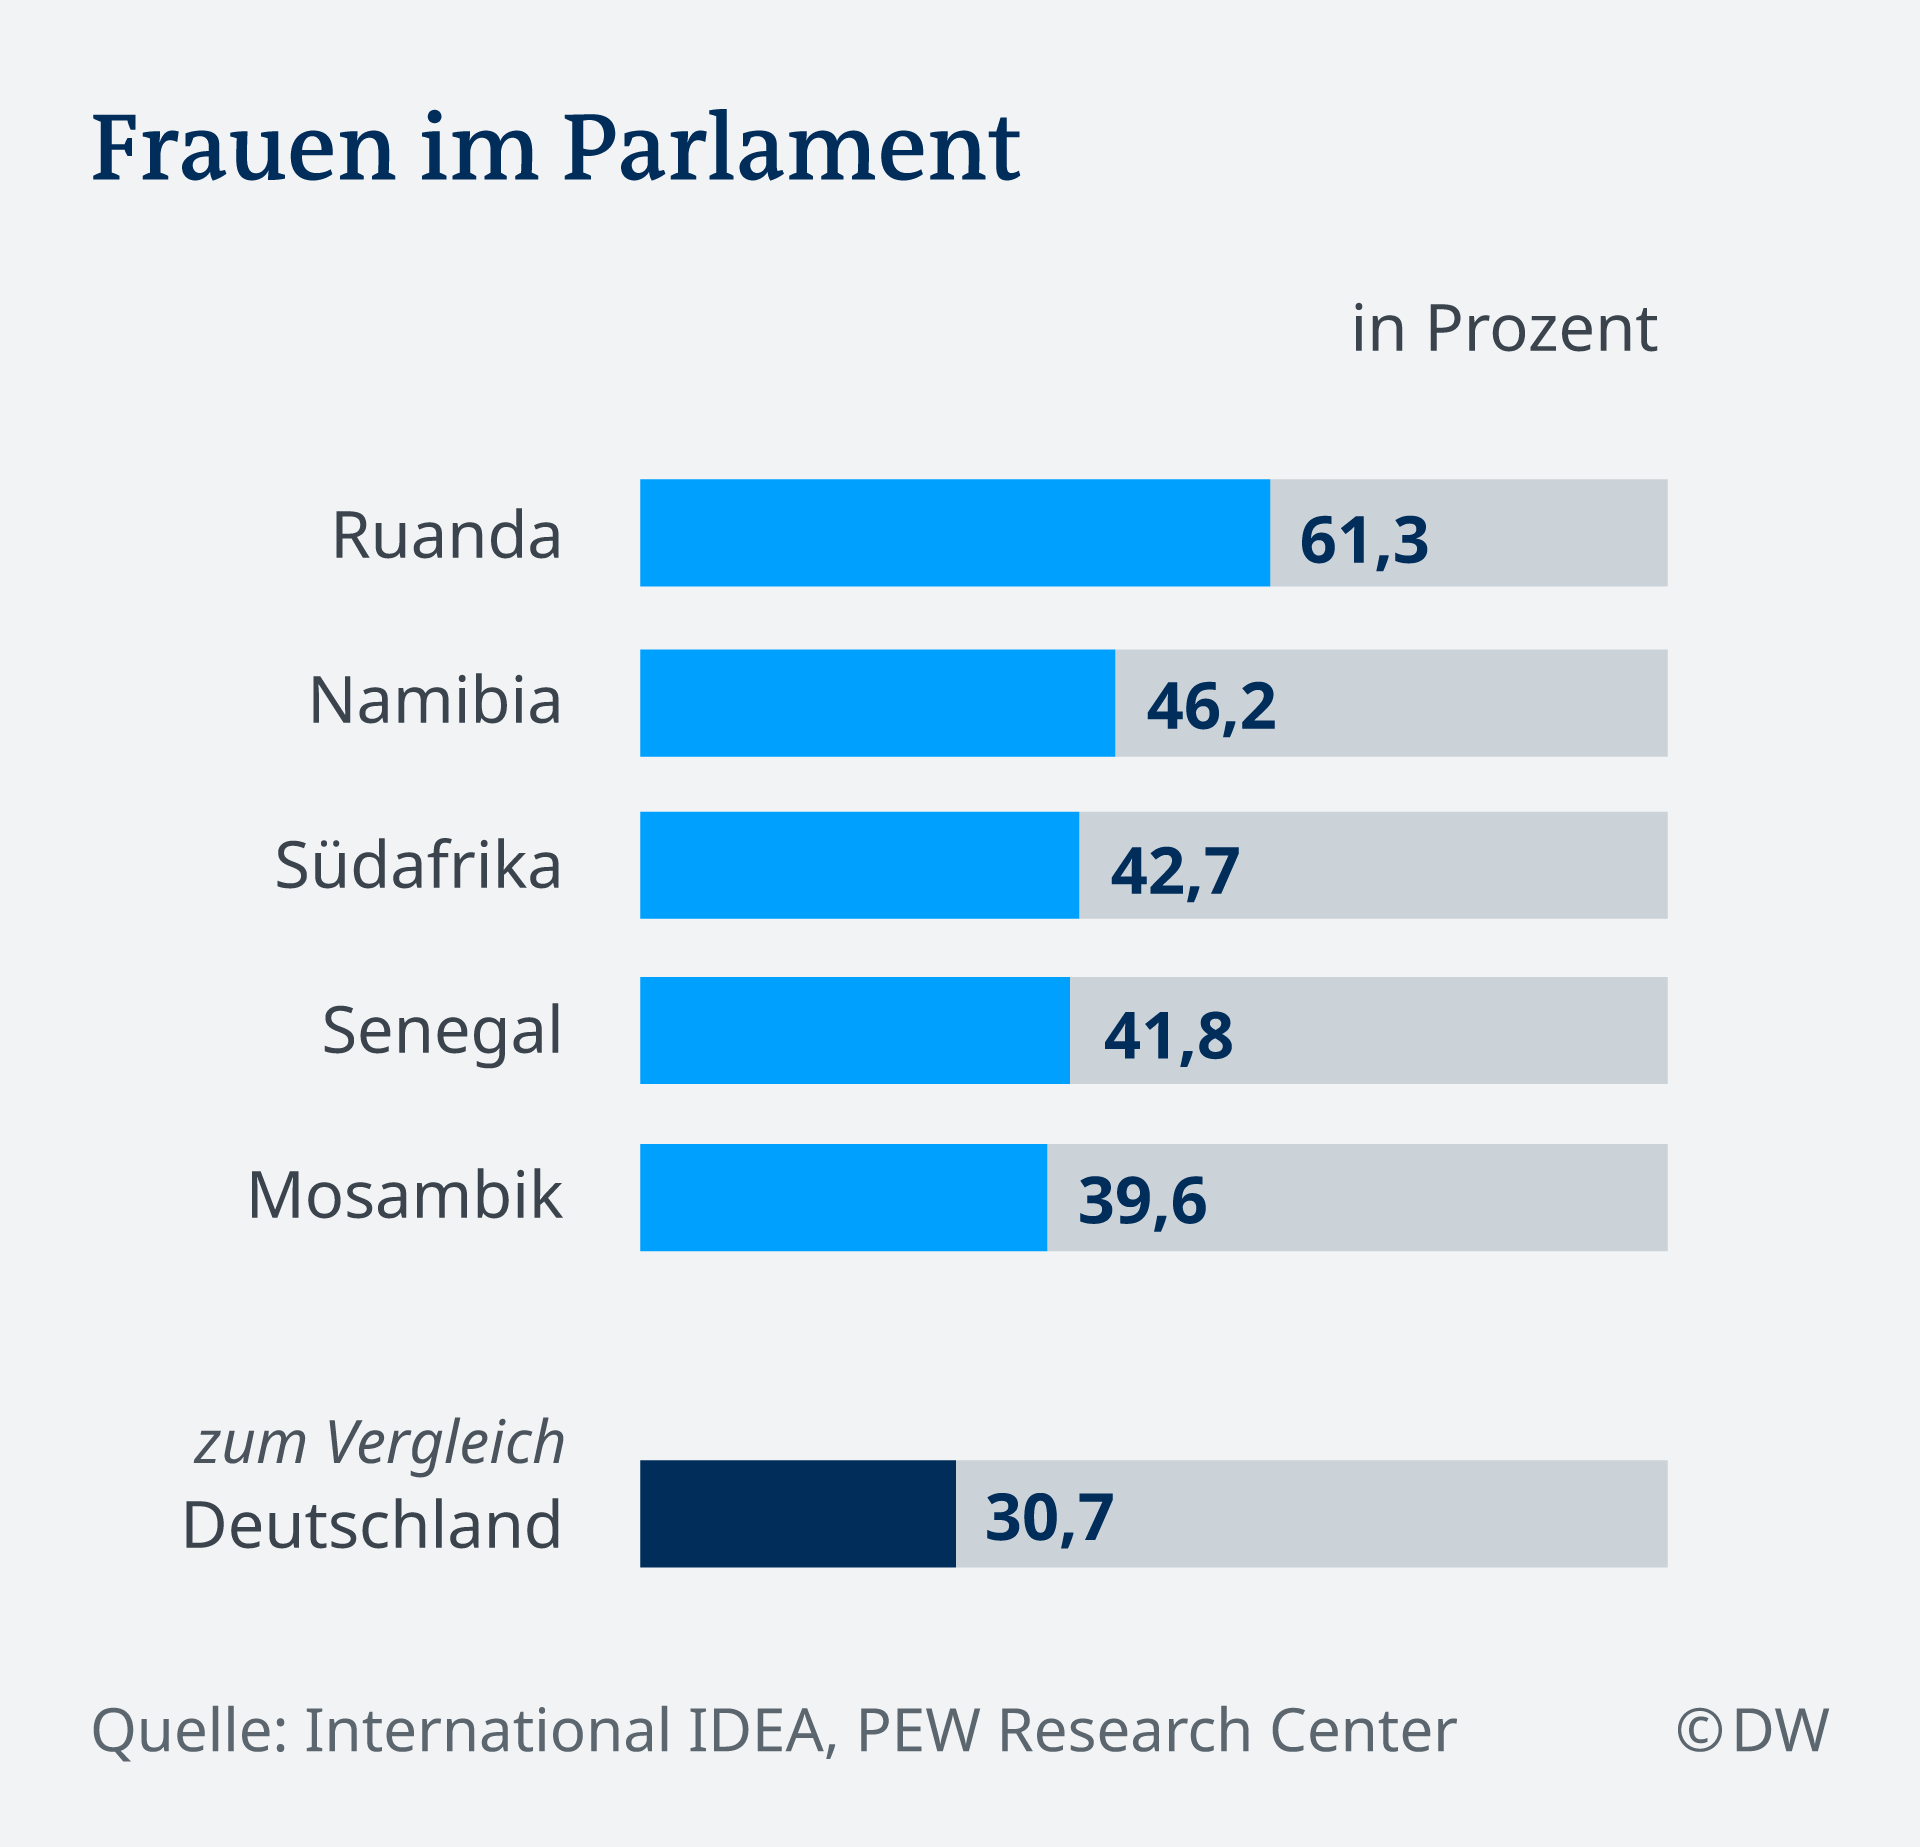 Eine Grafik mit dem Anteil weiblicher Abgeordneter in Parlamenten in verschiedenen Staaten